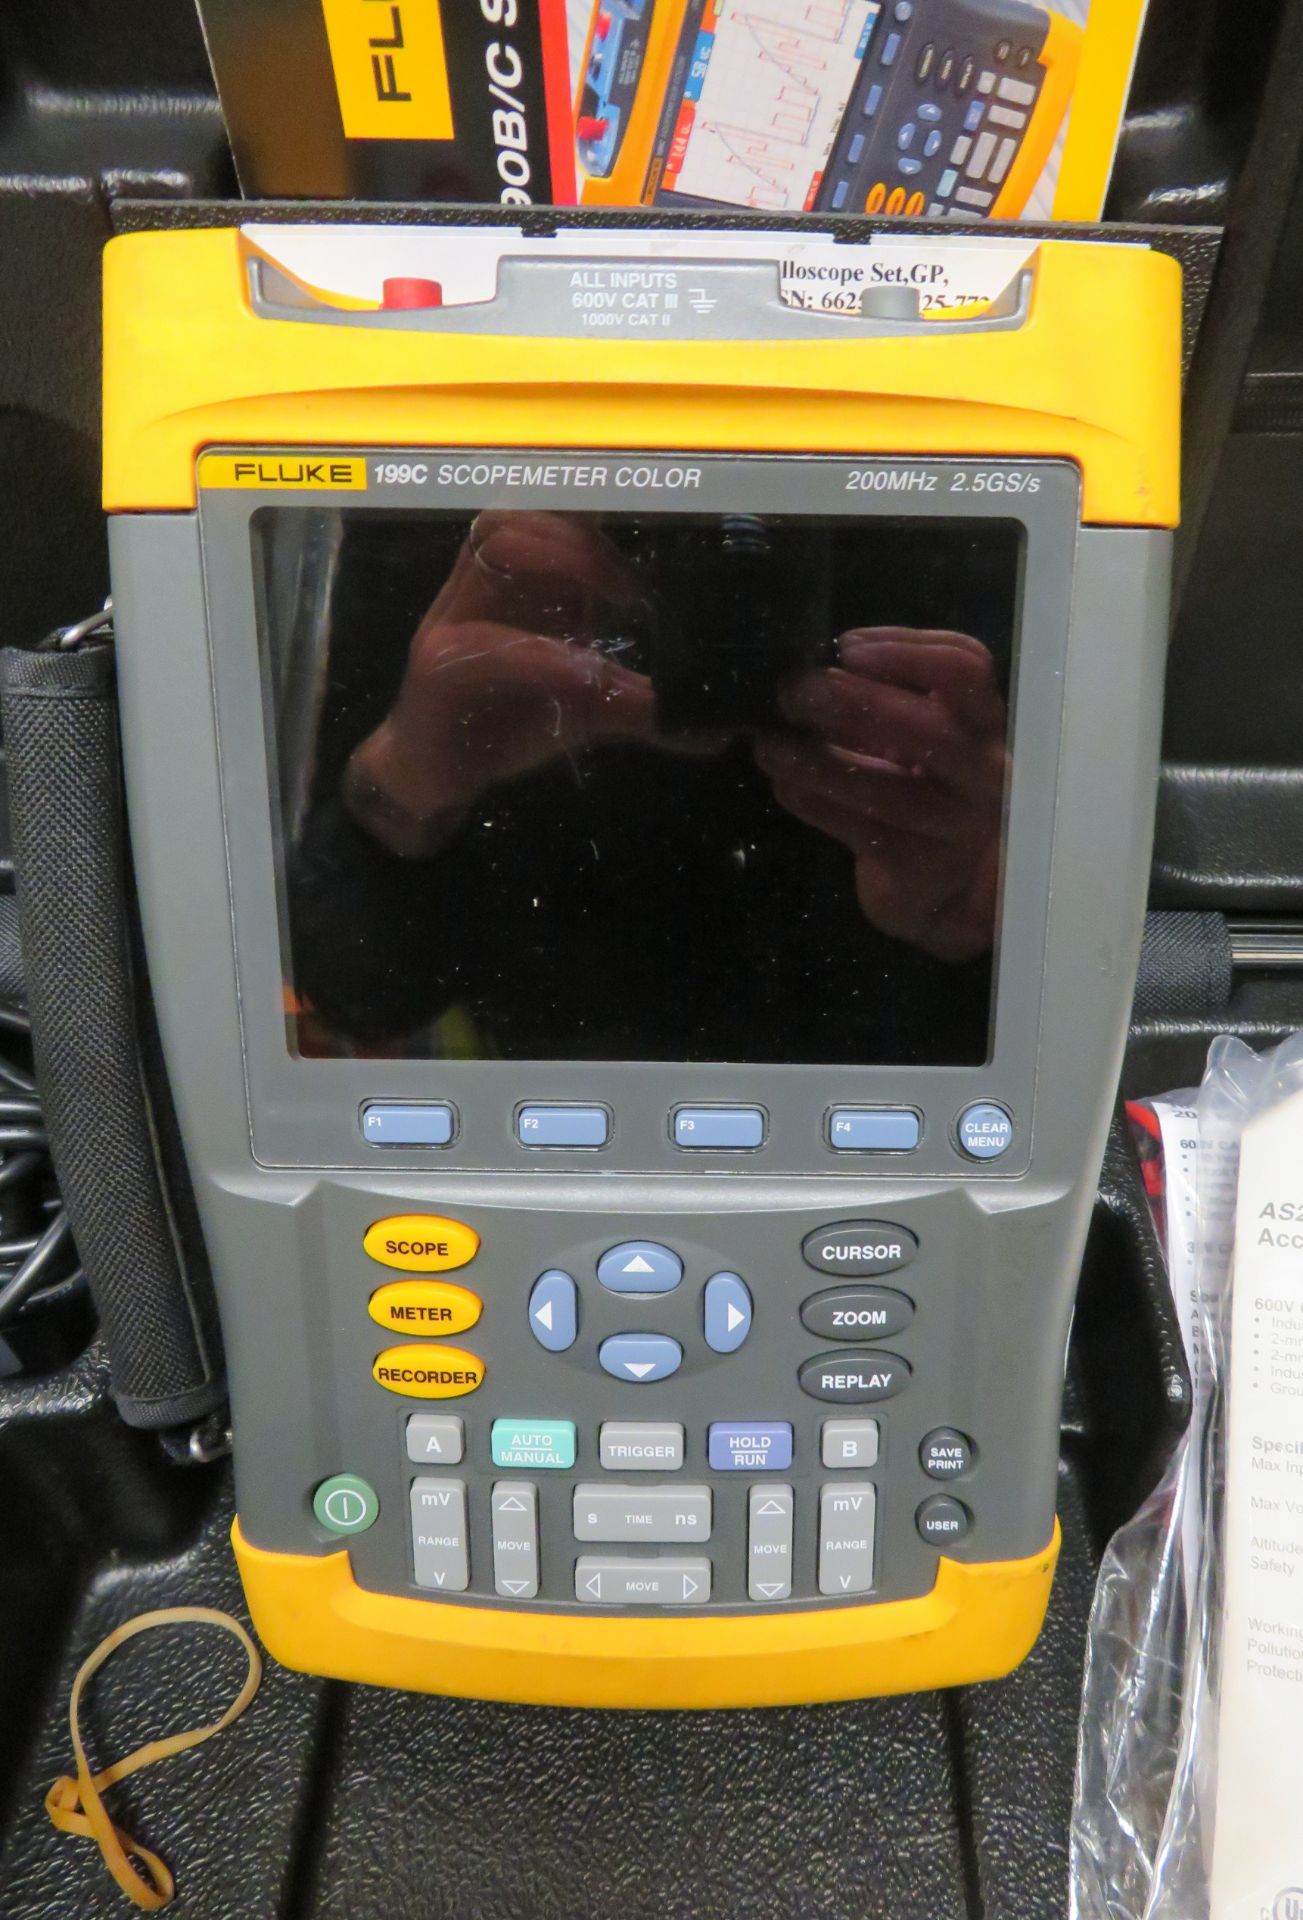 Fluke 199C Scopemeter Color 200MHz in Case. - Image 2 of 6